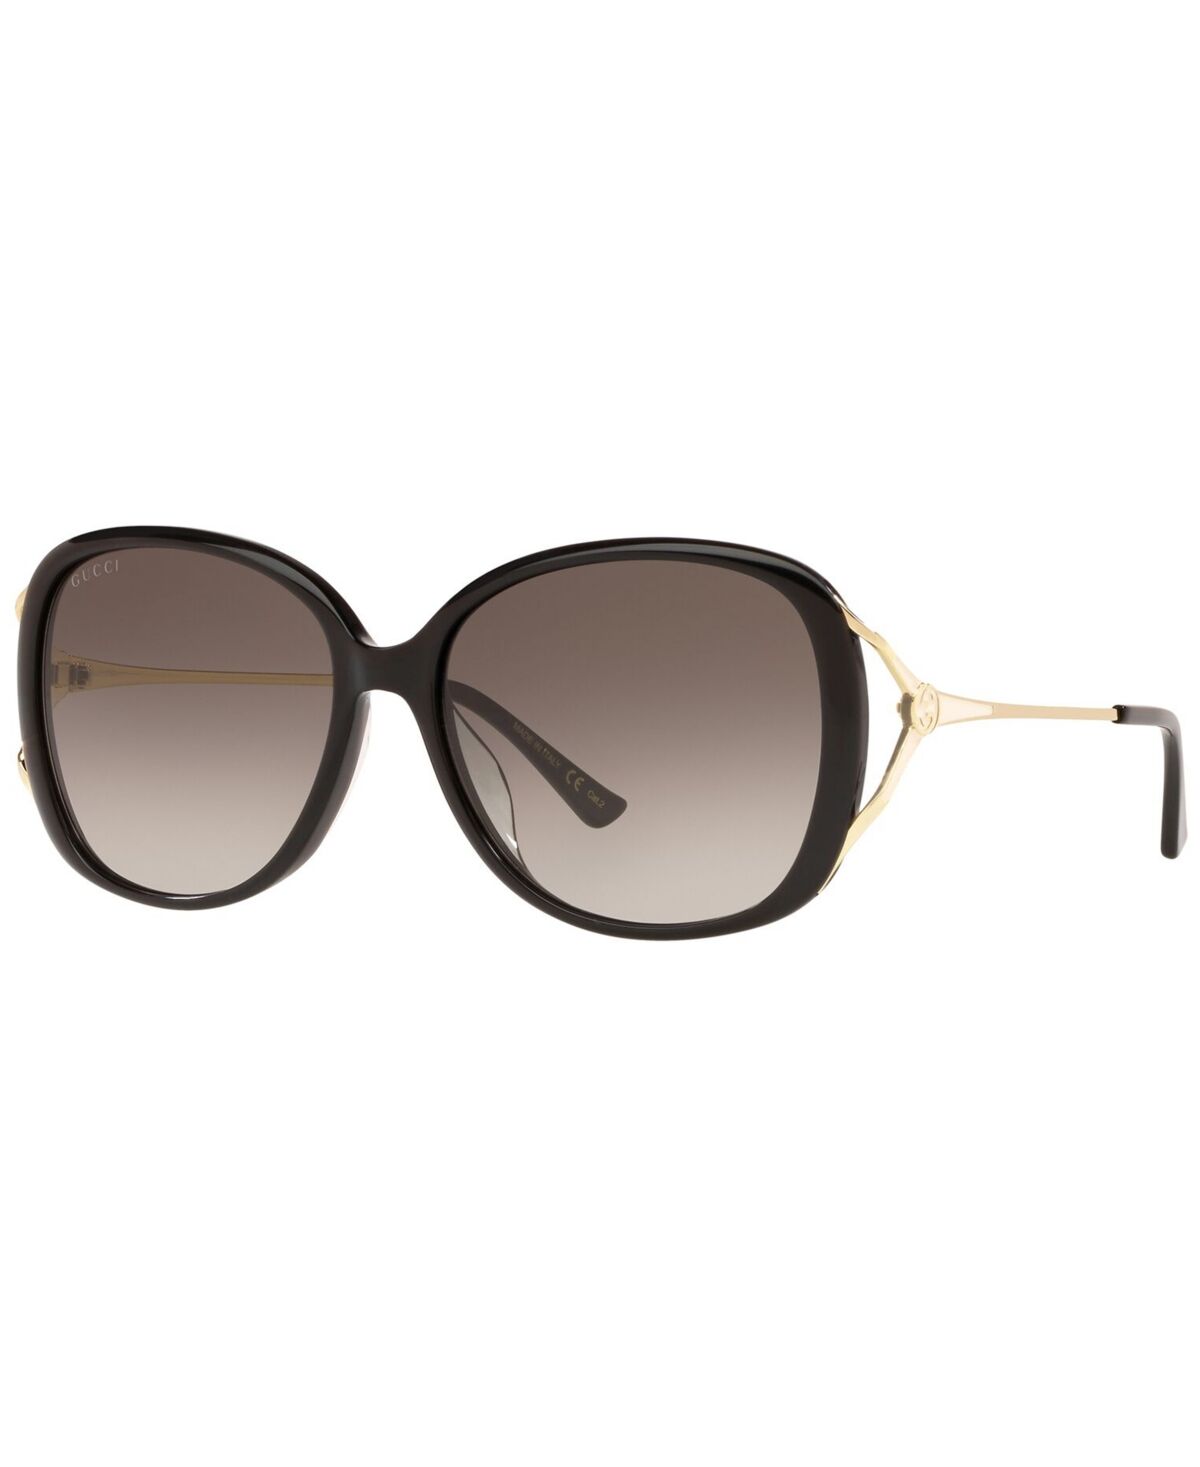 Gucci Women's Sunglasses, 0GC001374 - BLACK GOLD/GREY GRAD